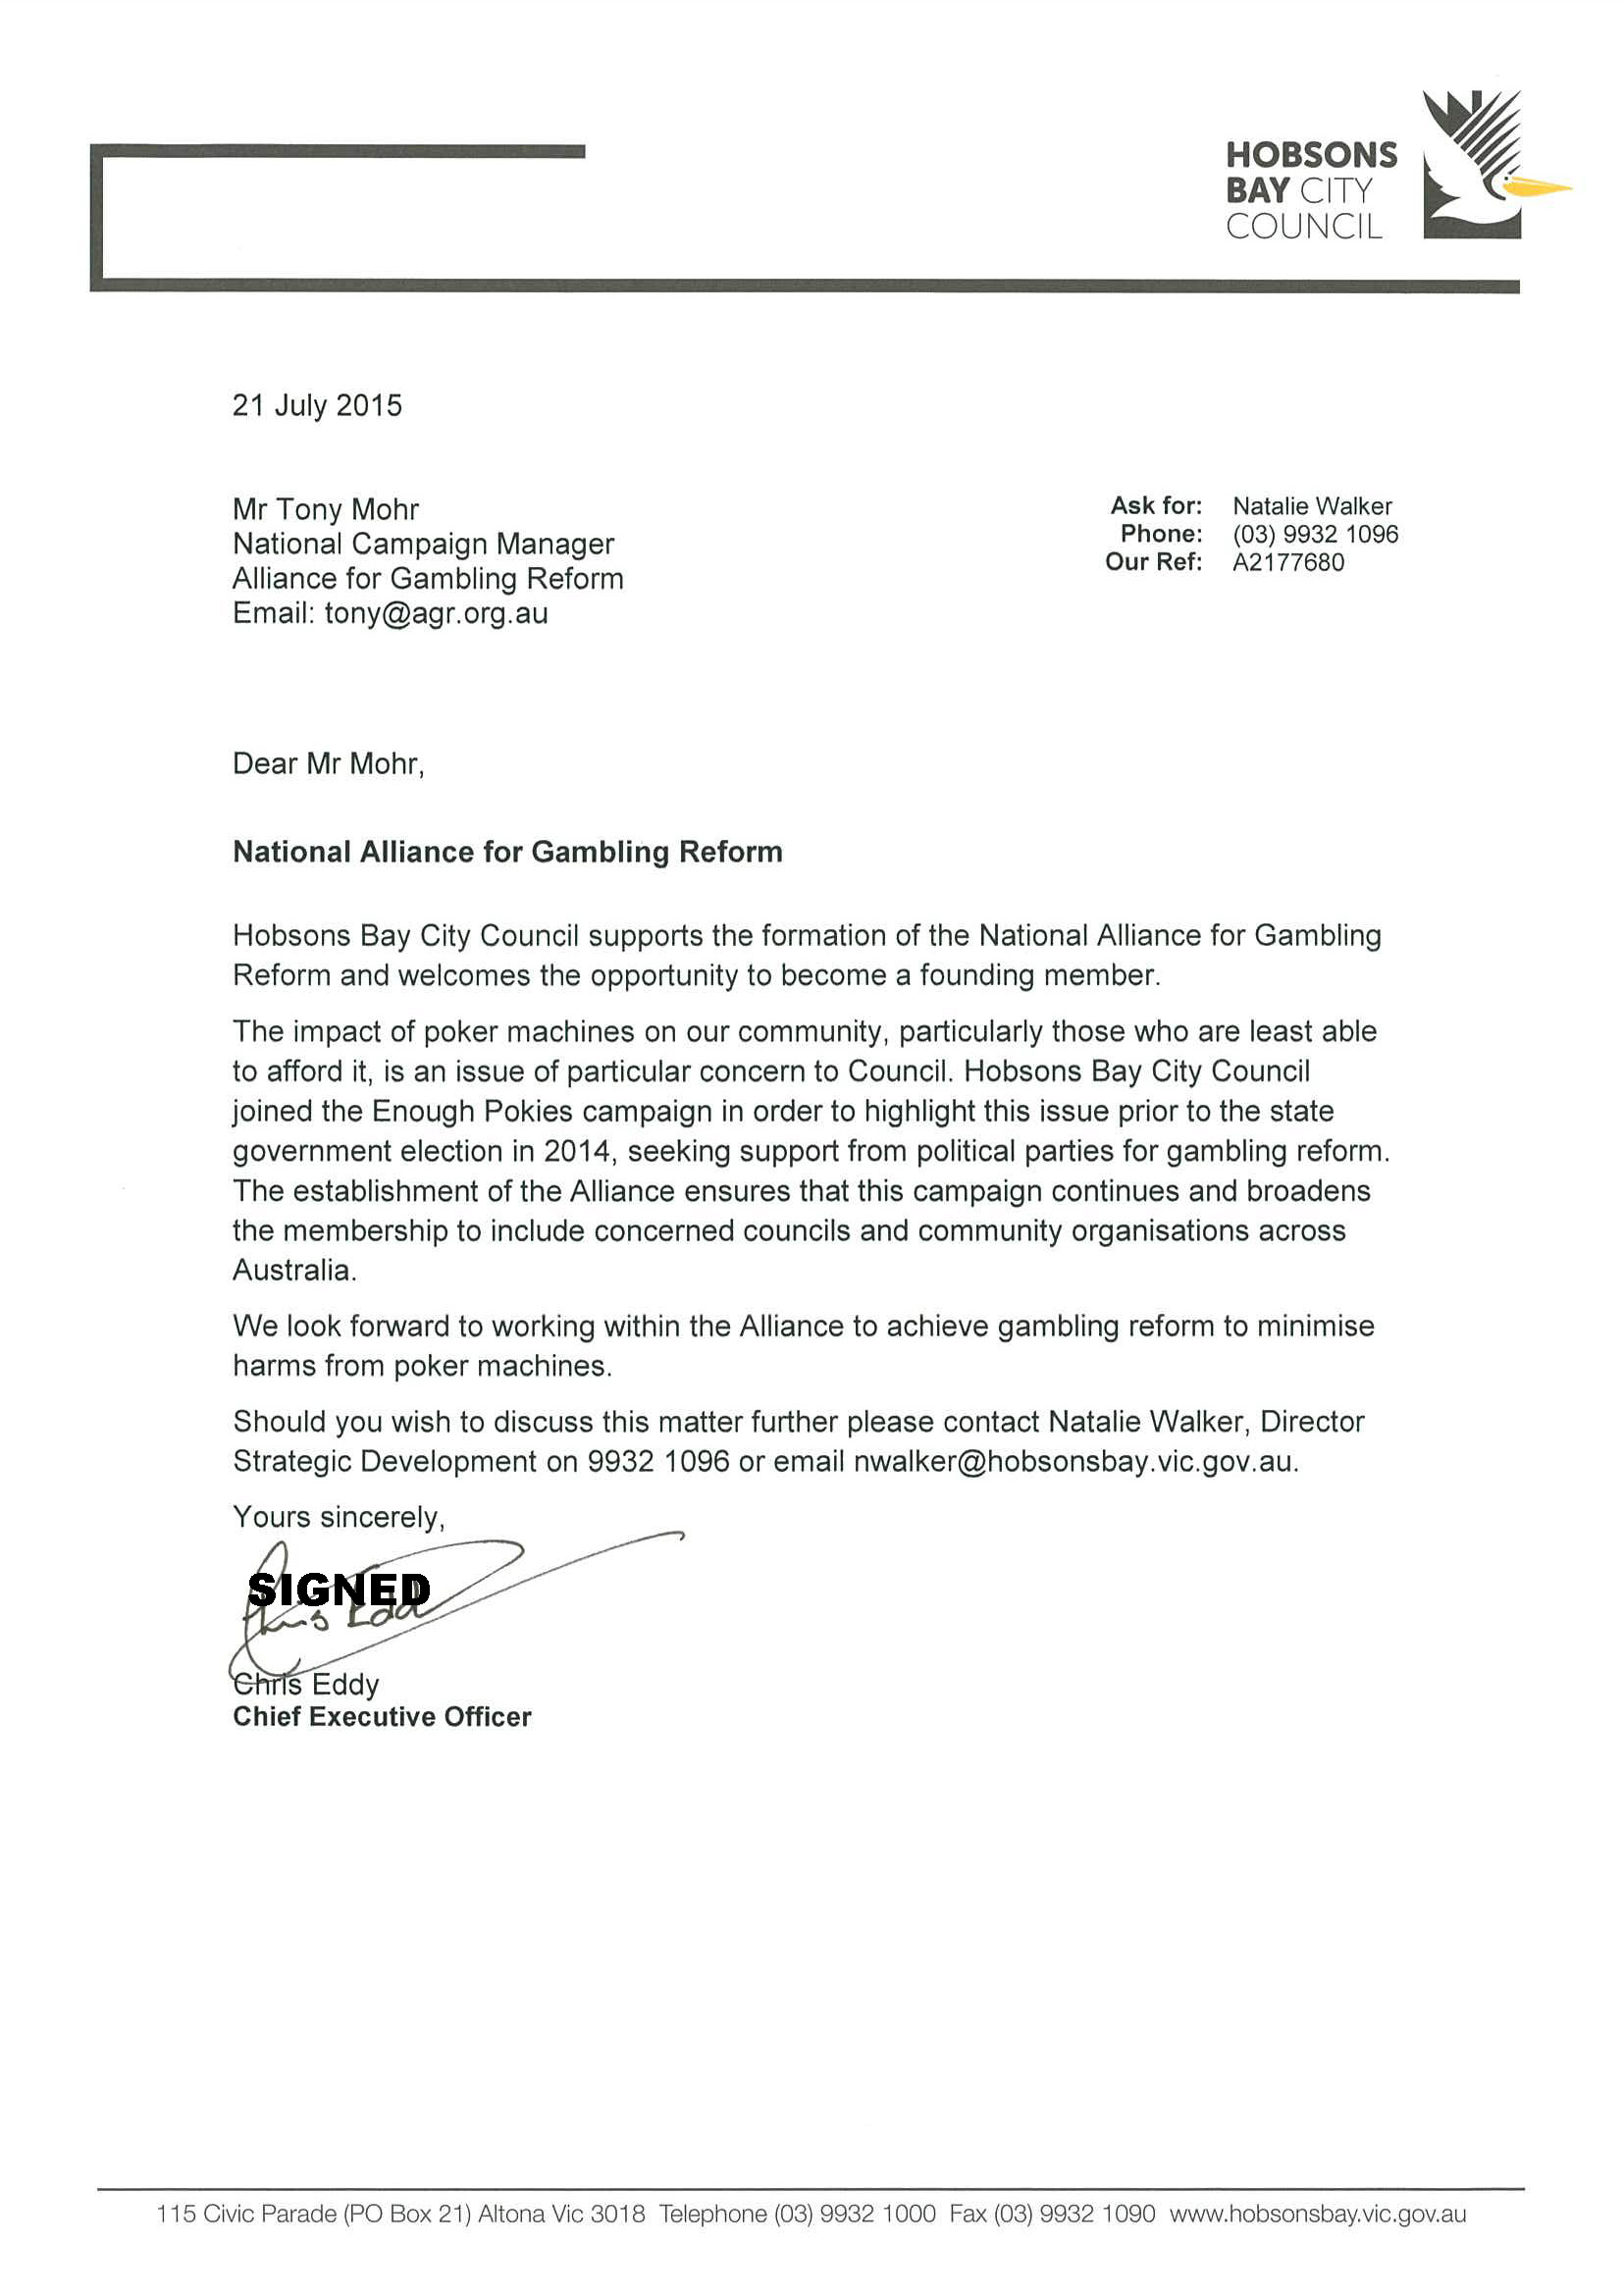 20150721-Letter-Mr-Tony-Mohr-National-Alliance-for-Gambling-Reform-A2182609-002.jpg